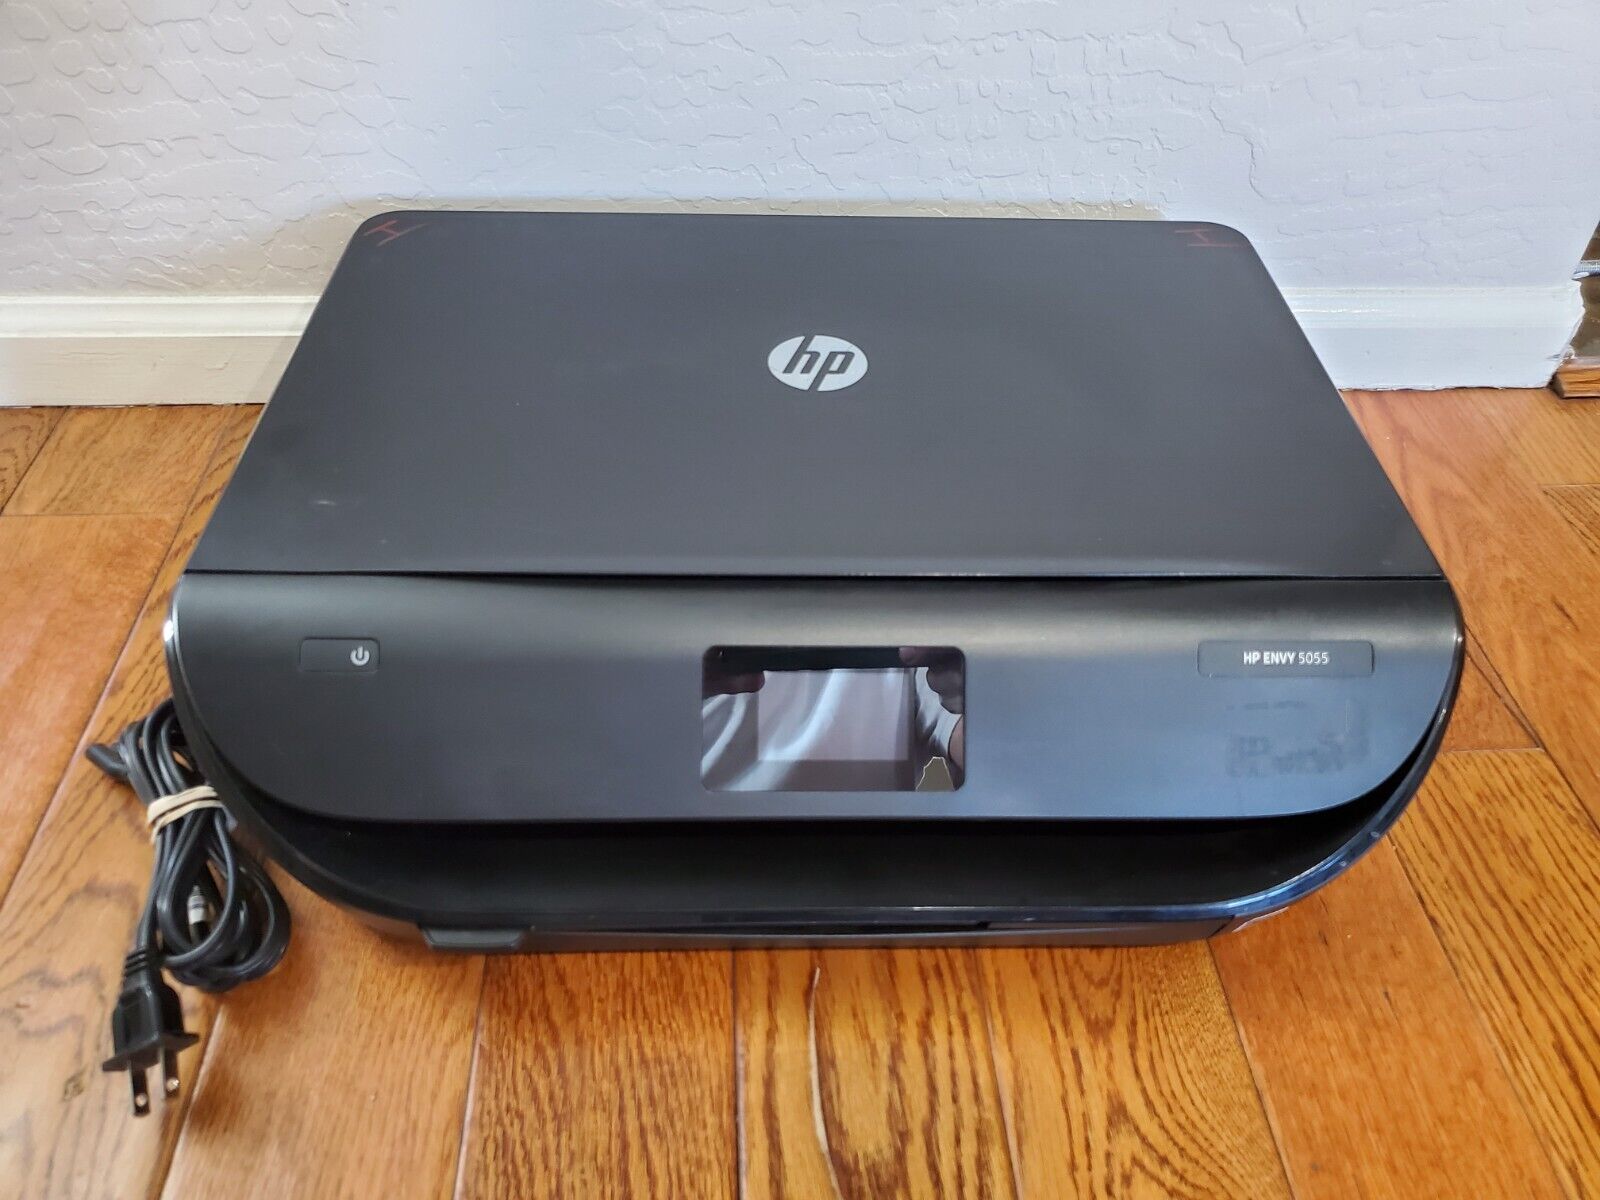 HP ENVY 5055 All-In-One Printer Scanner Inkjet Printer - Tested